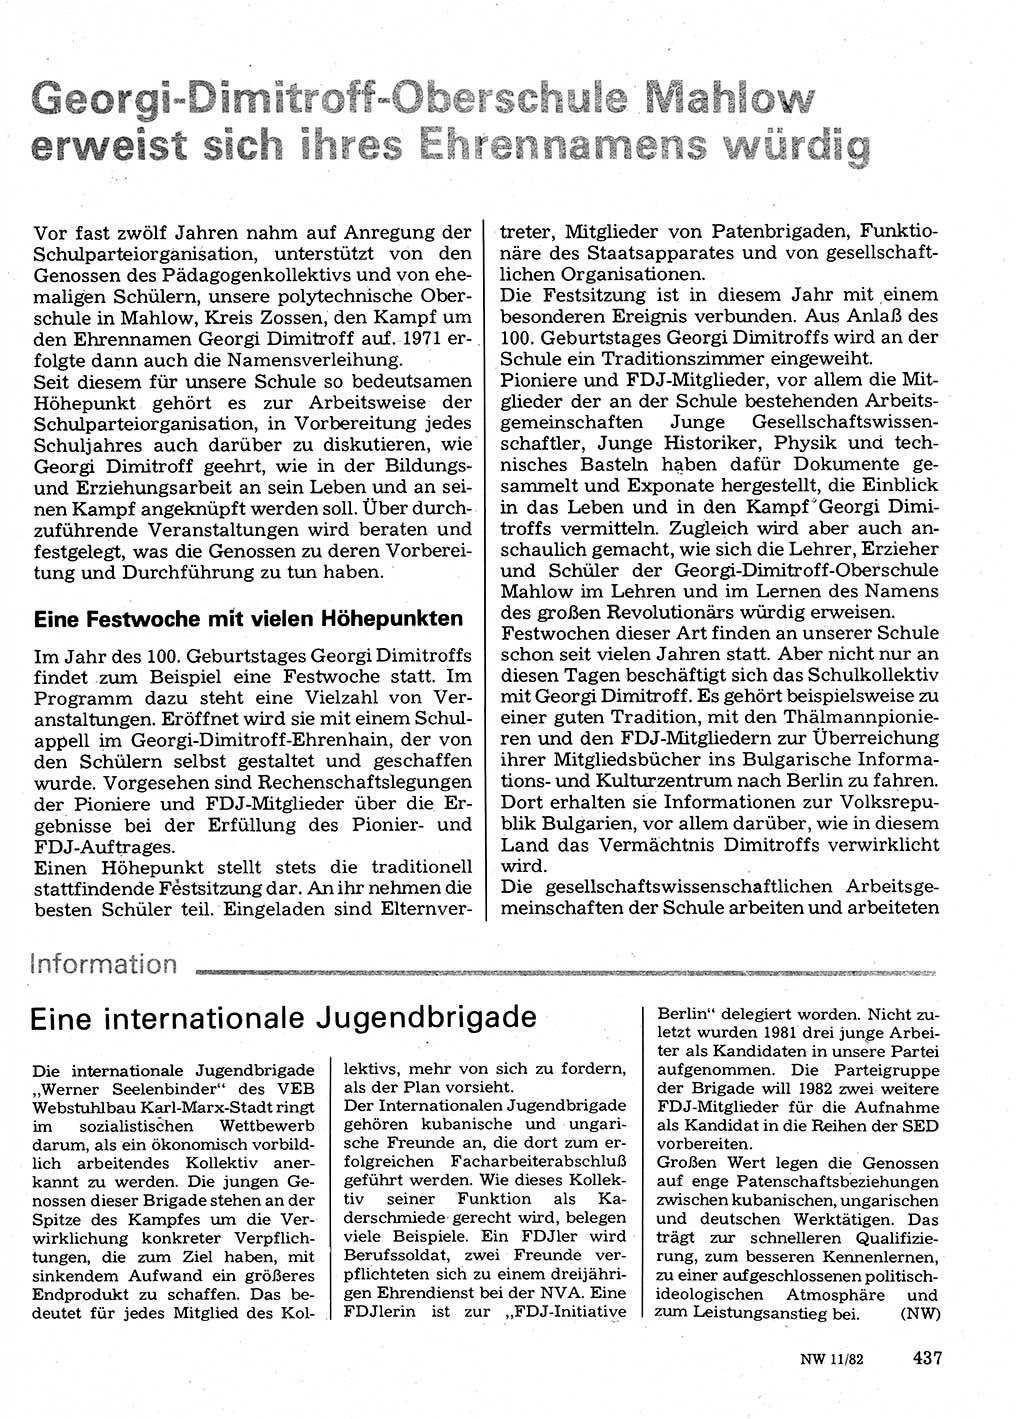 Neuer Weg (NW), Organ des Zentralkomitees (ZK) der SED (Sozialistische Einheitspartei Deutschlands) für Fragen des Parteilebens, 37. Jahrgang [Deutsche Demokratische Republik (DDR)] 1982, Seite 437 (NW ZK SED DDR 1982, S. 437)